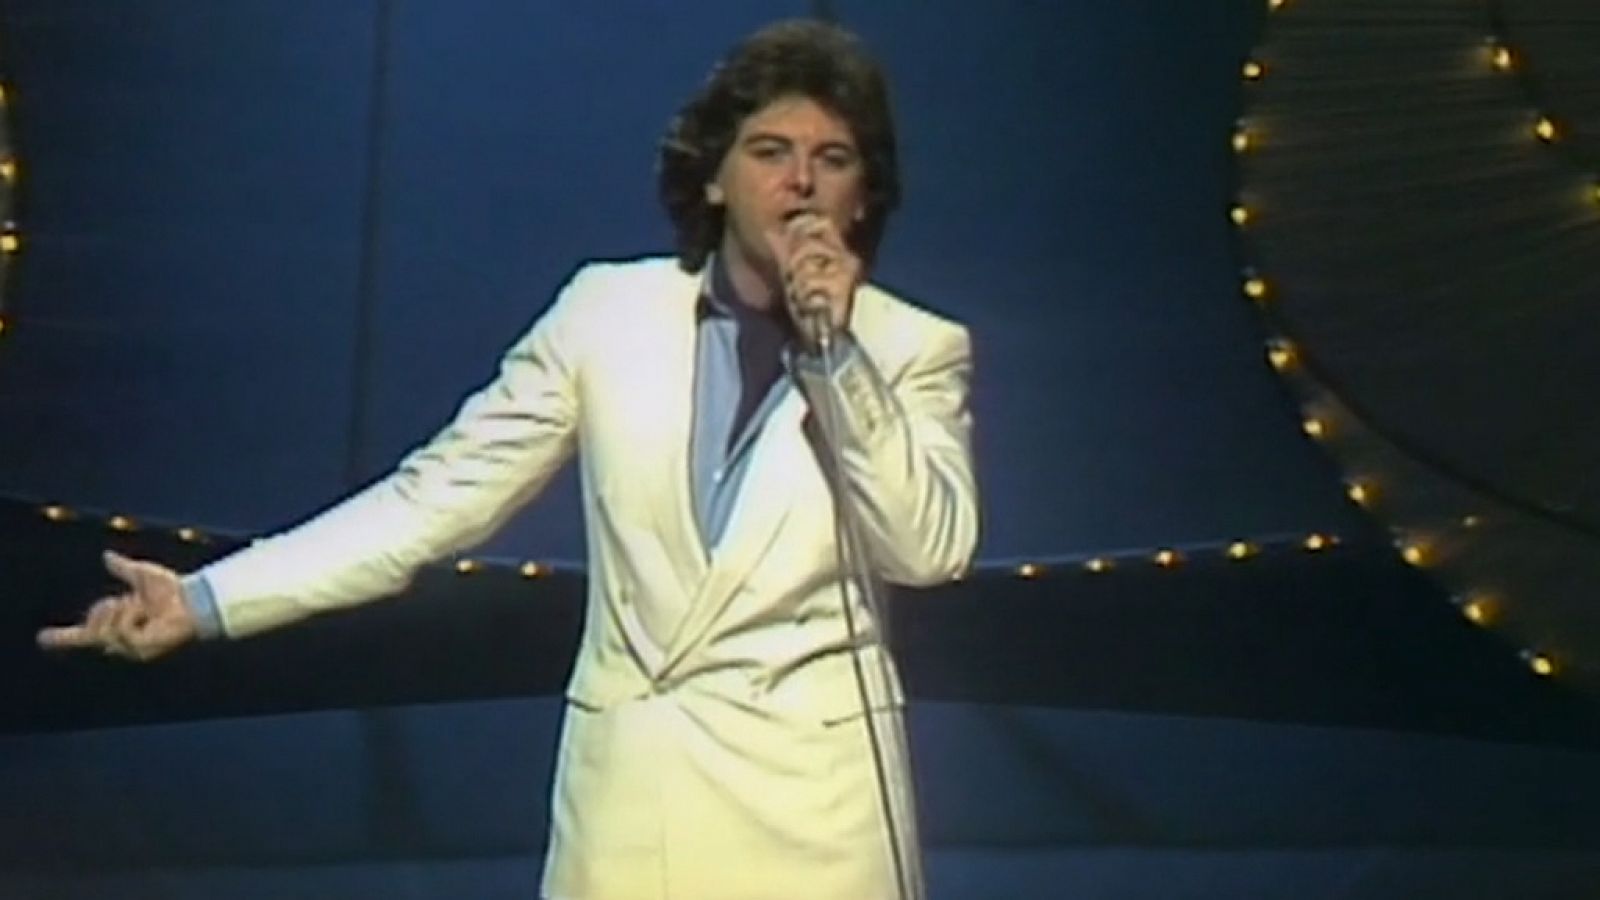 Festival de Eurovisión 1981 - José María Bacchelli cantó "Y solo tú"